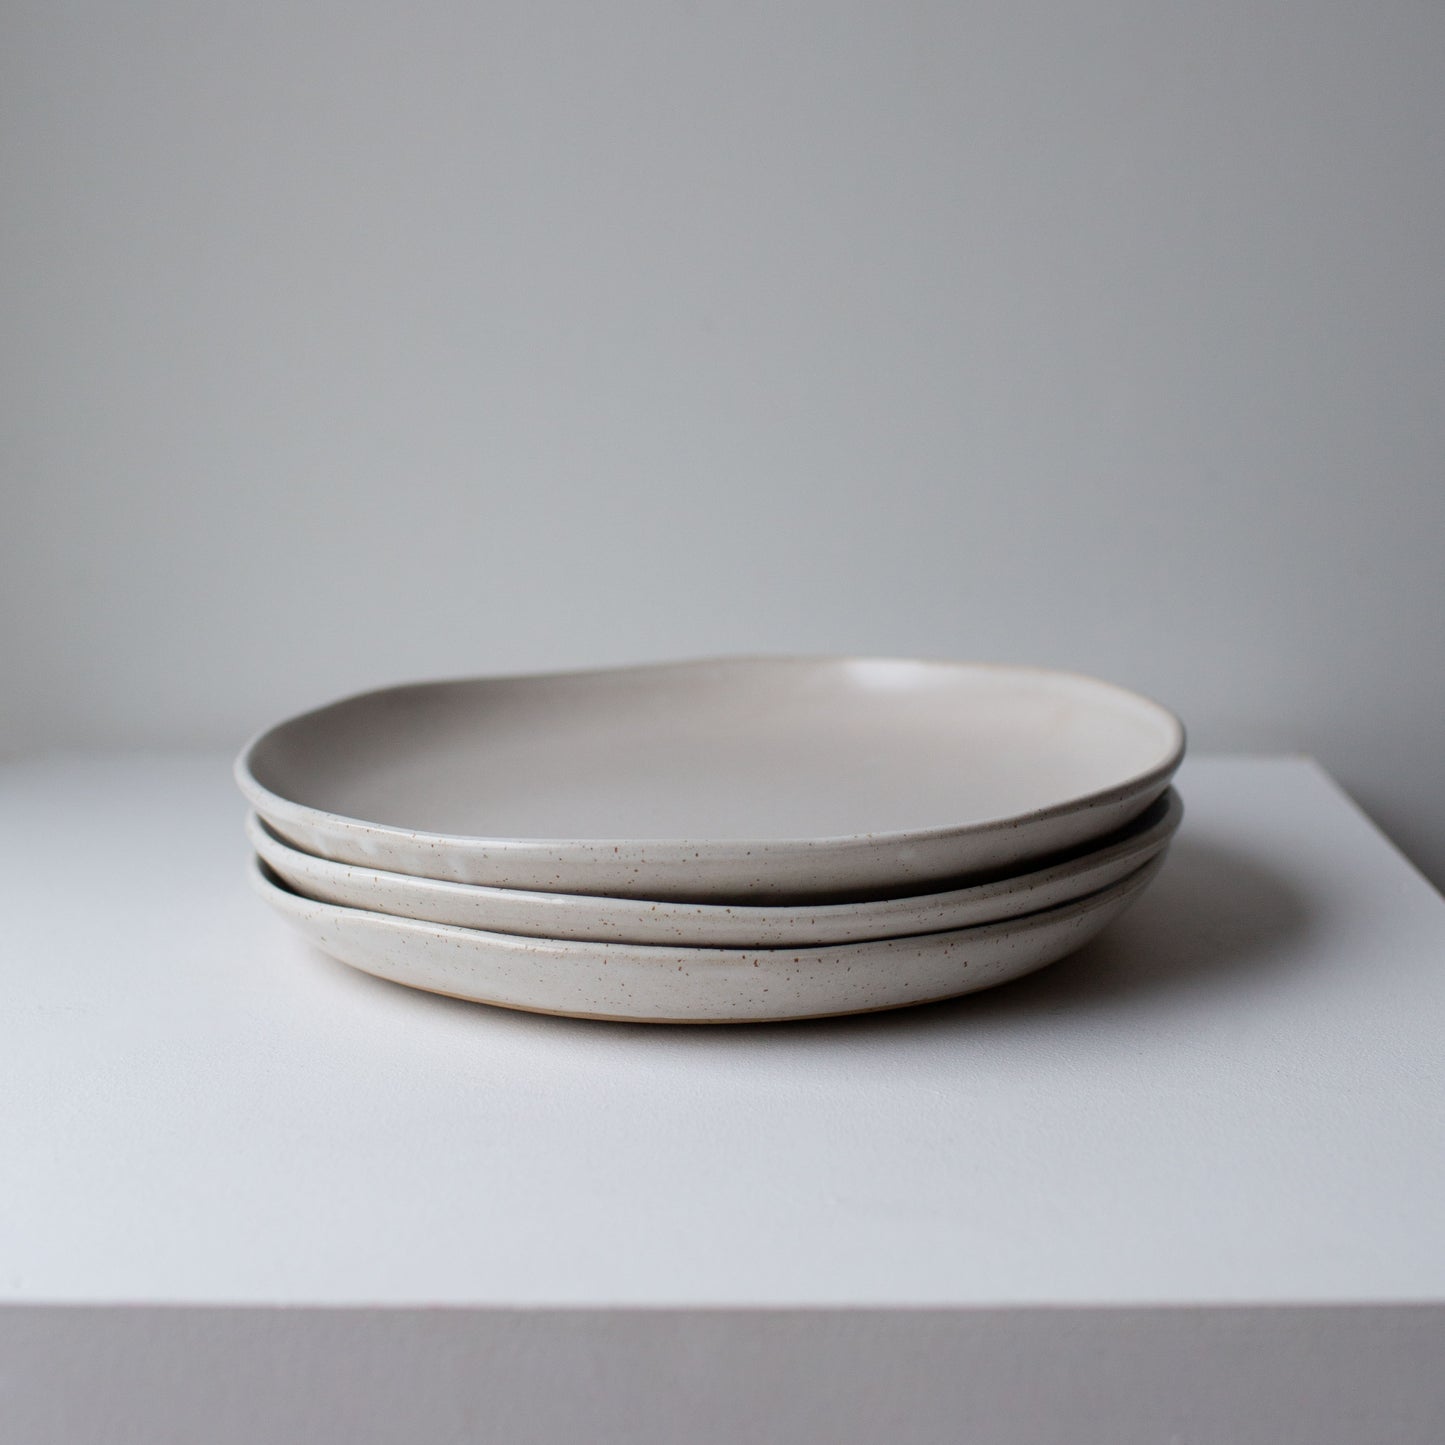 Large dinner plate - Satin white